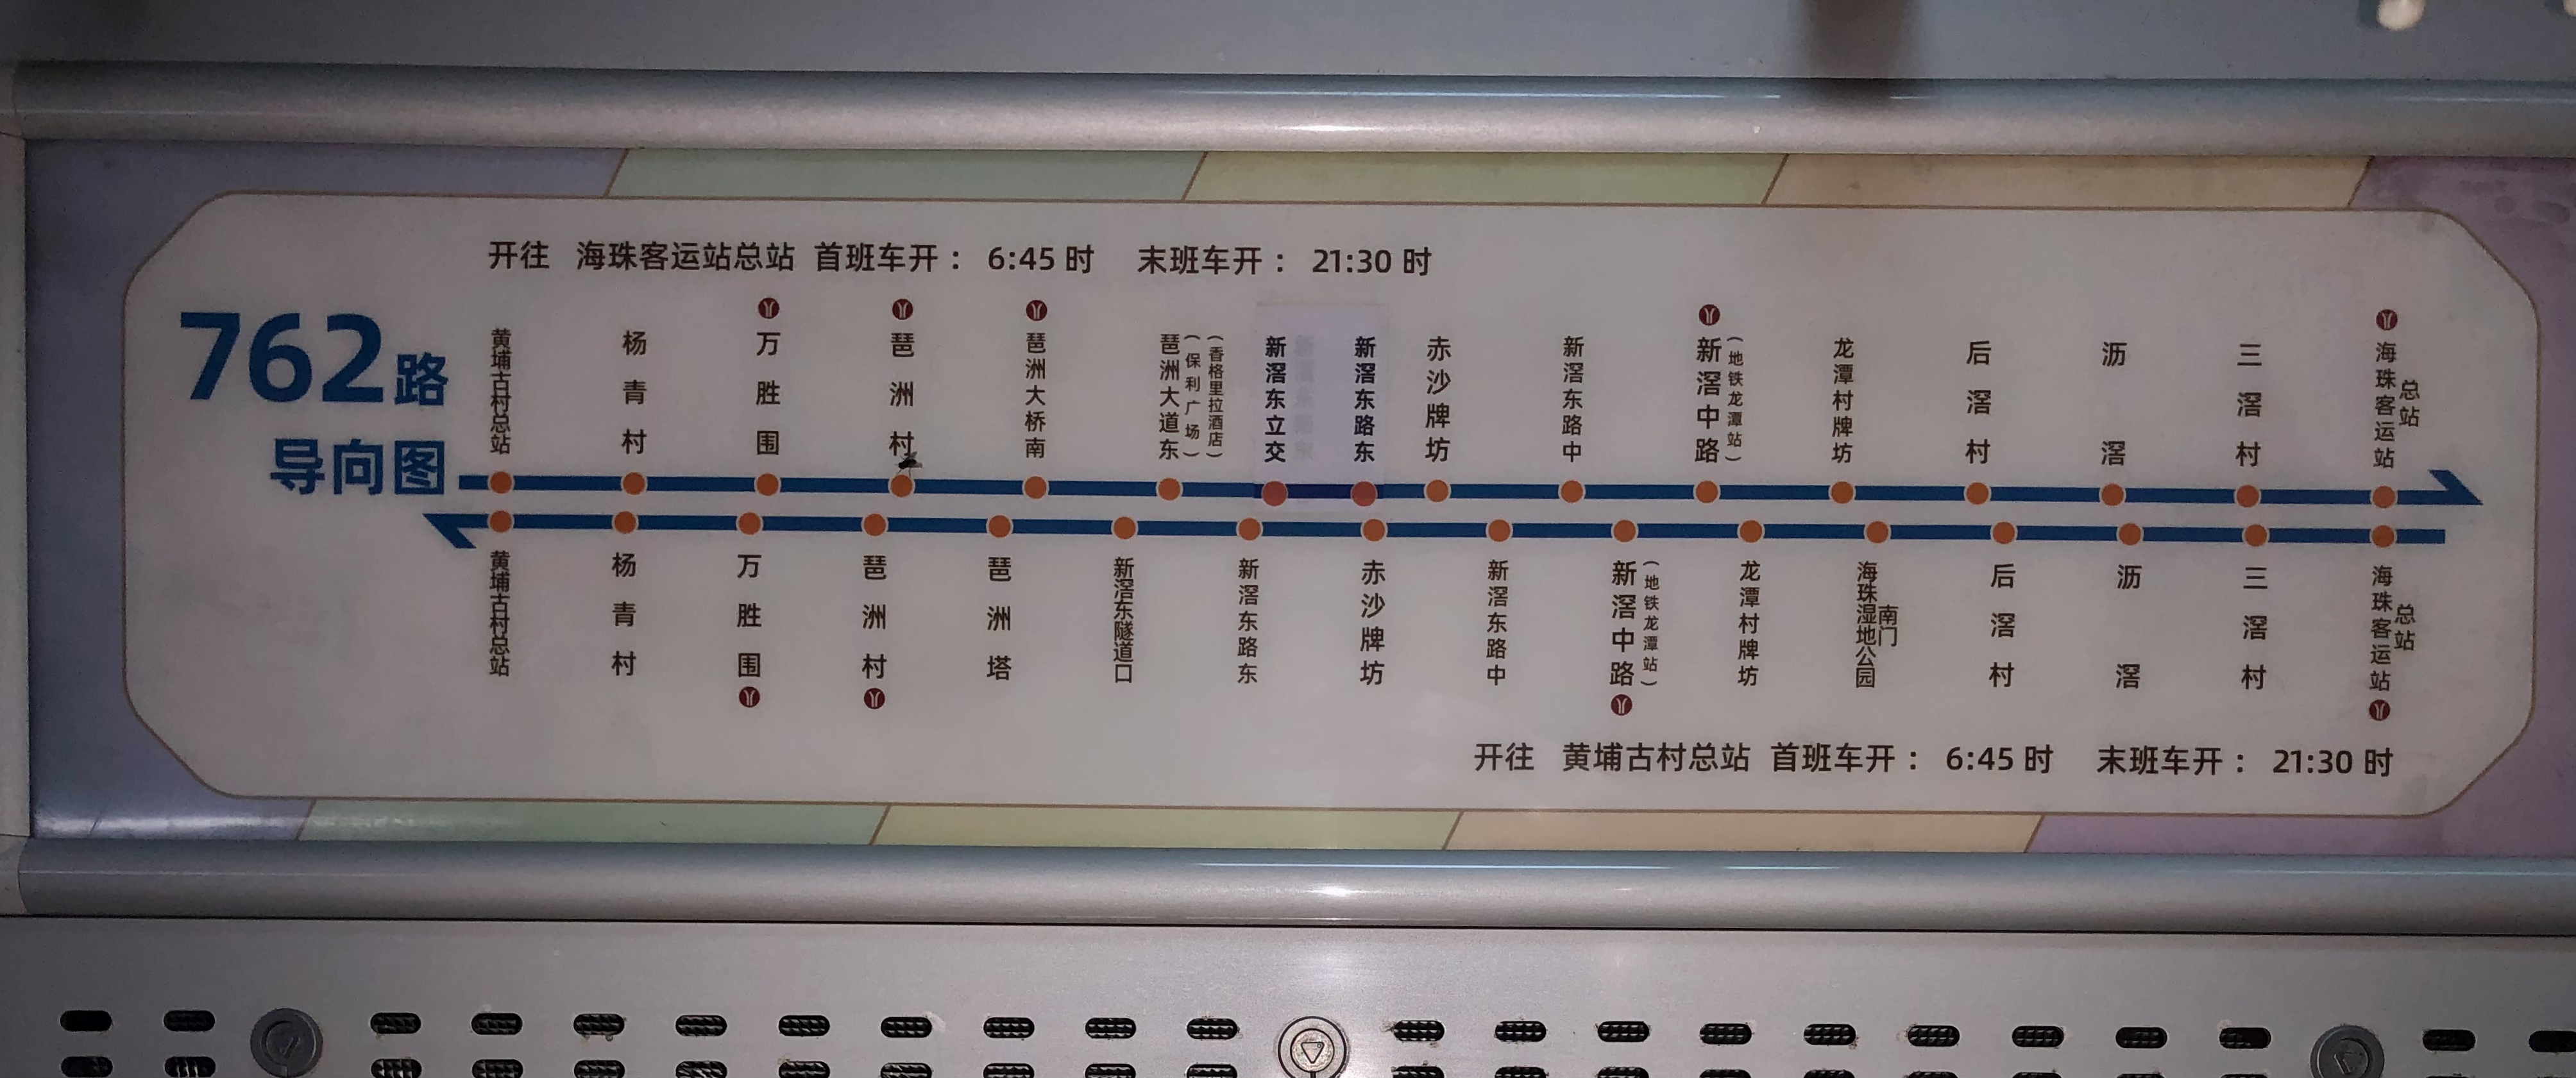 广州762路公交车路线